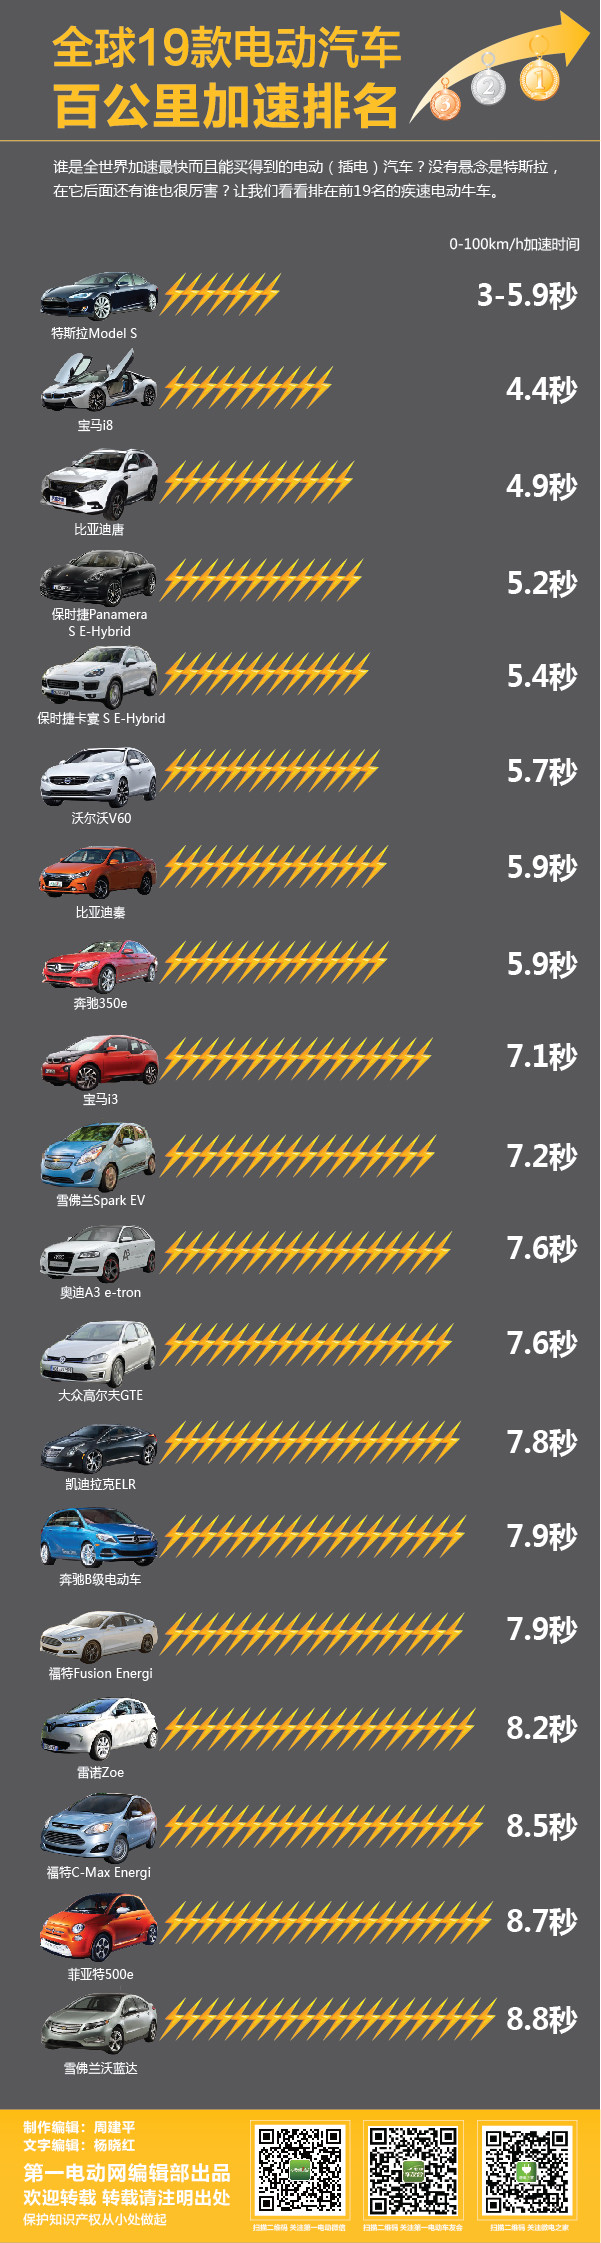 全球19款电动汽车百公里加速排名